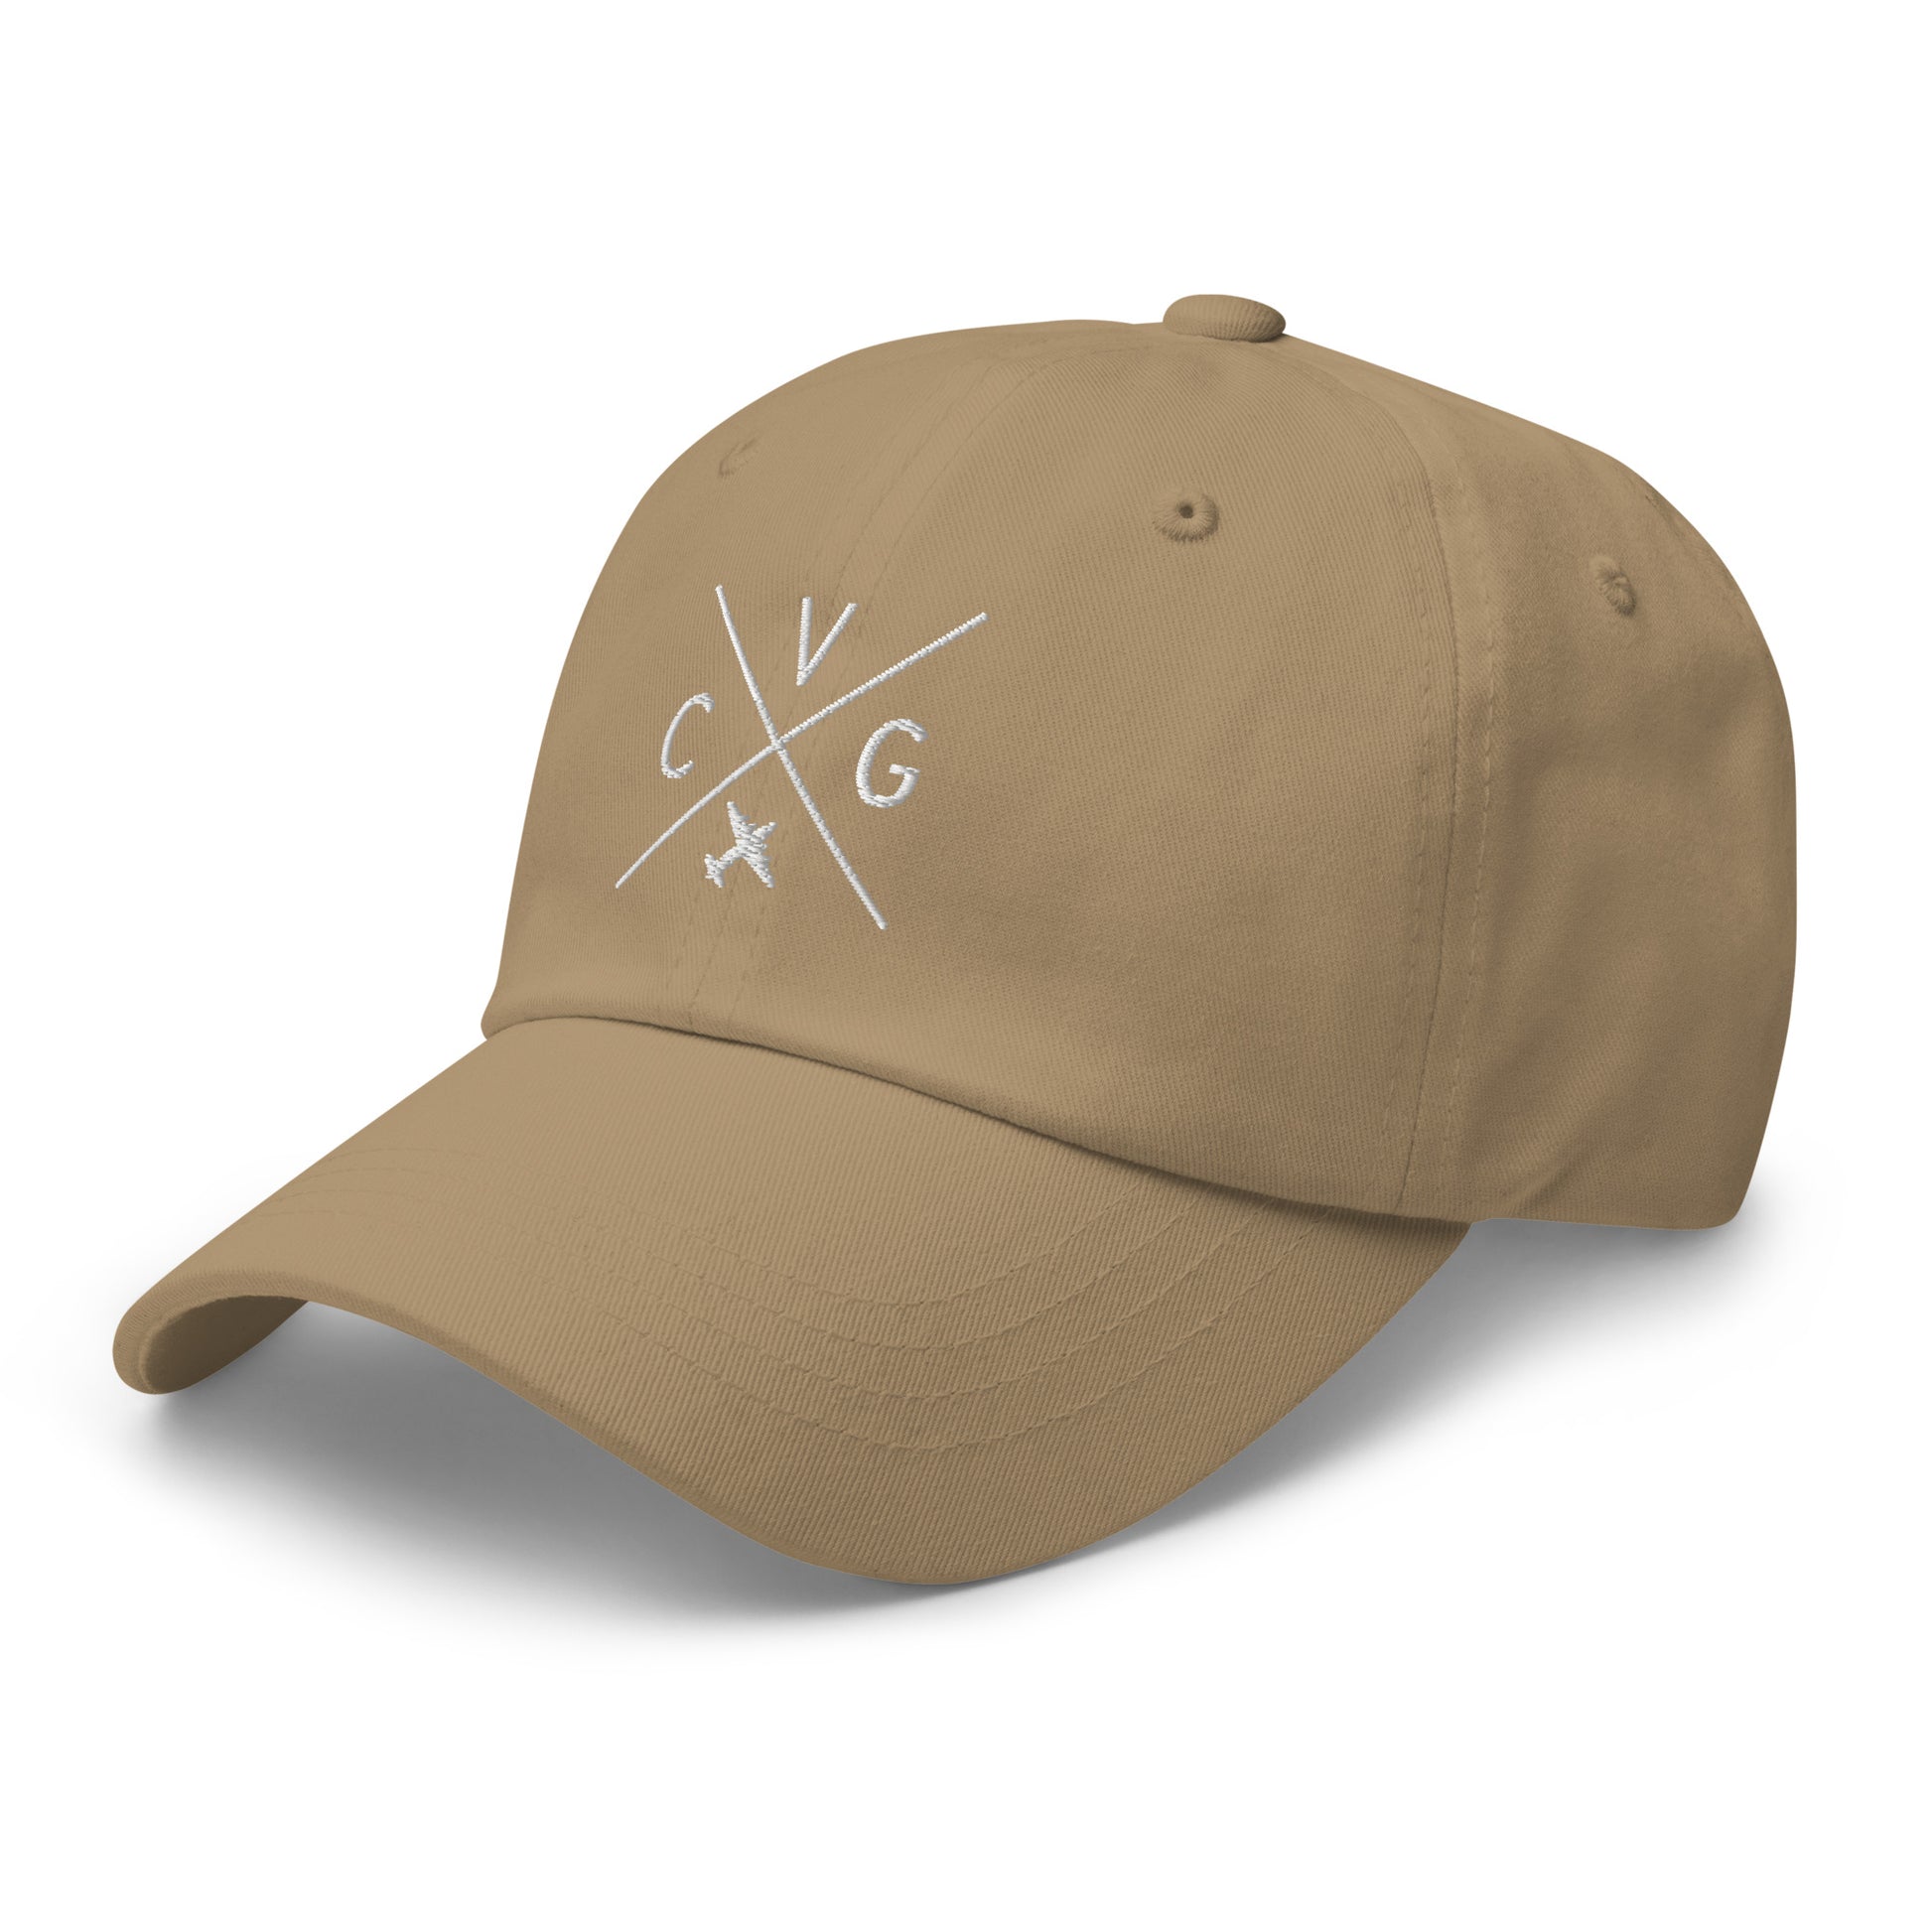 Crossed-X Dad Hat - White • CVG Cincinnati • YHM Designs - Image 24